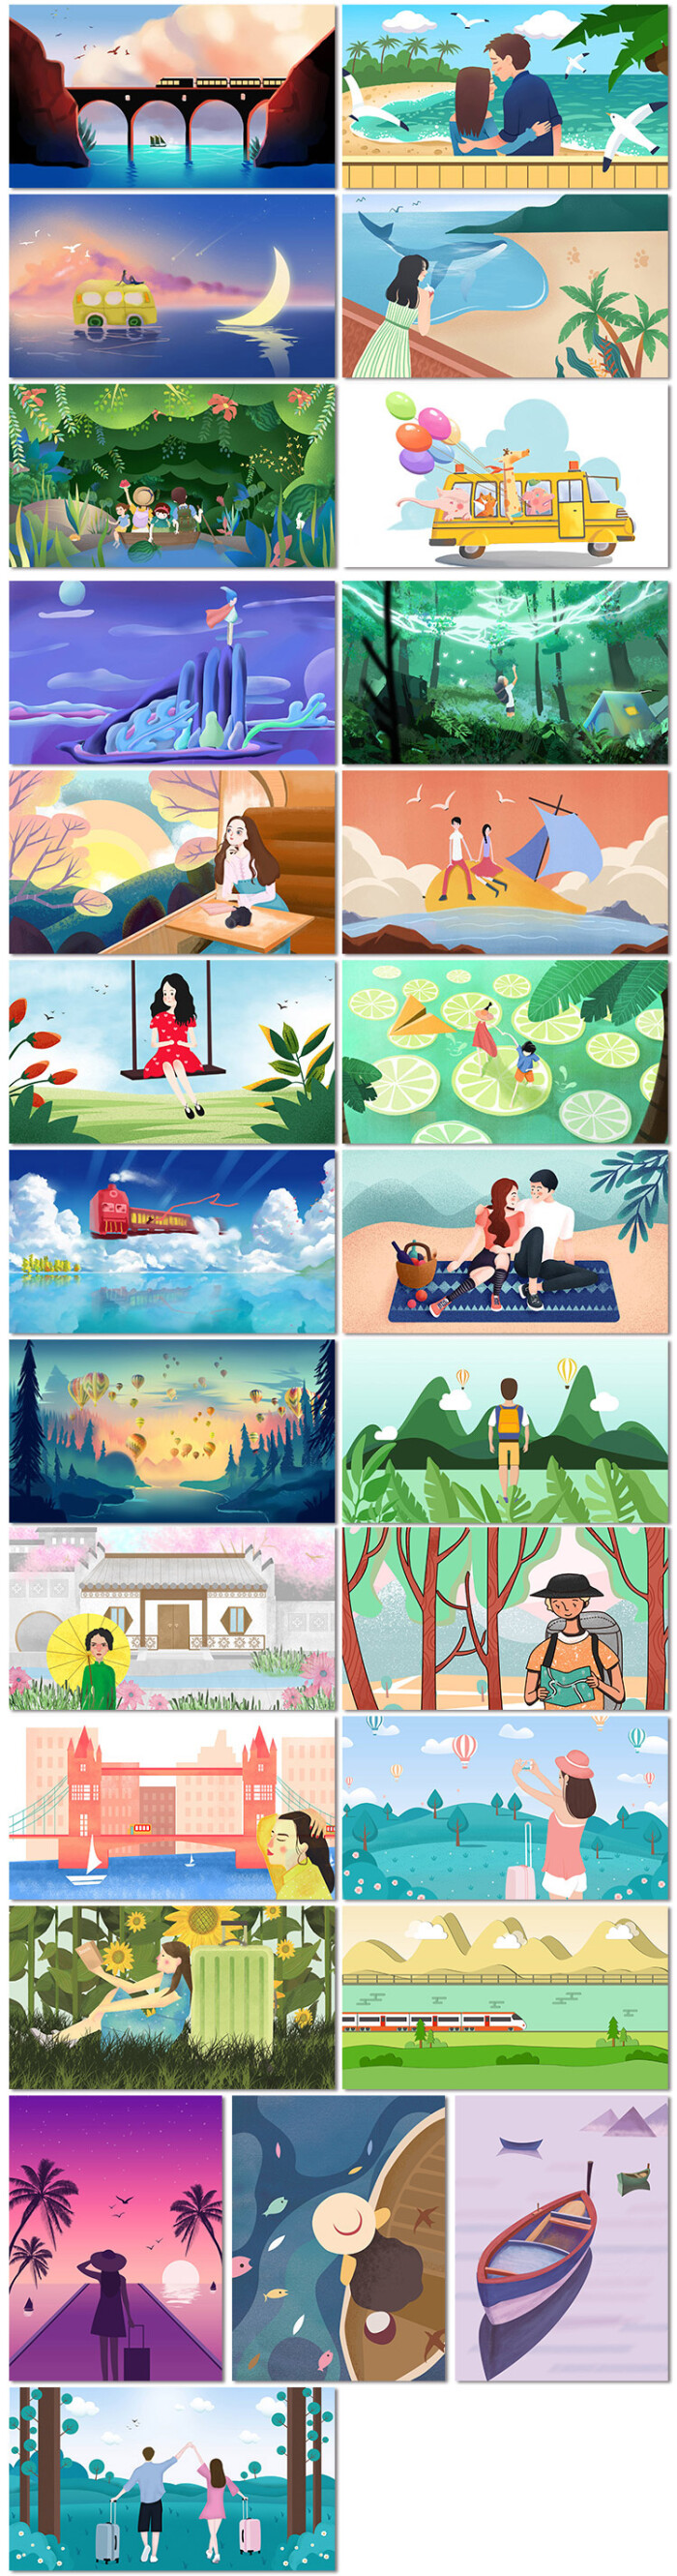 户外露营旅行青春毕业励志童话卡通手绘插画海报psd模板设计素材